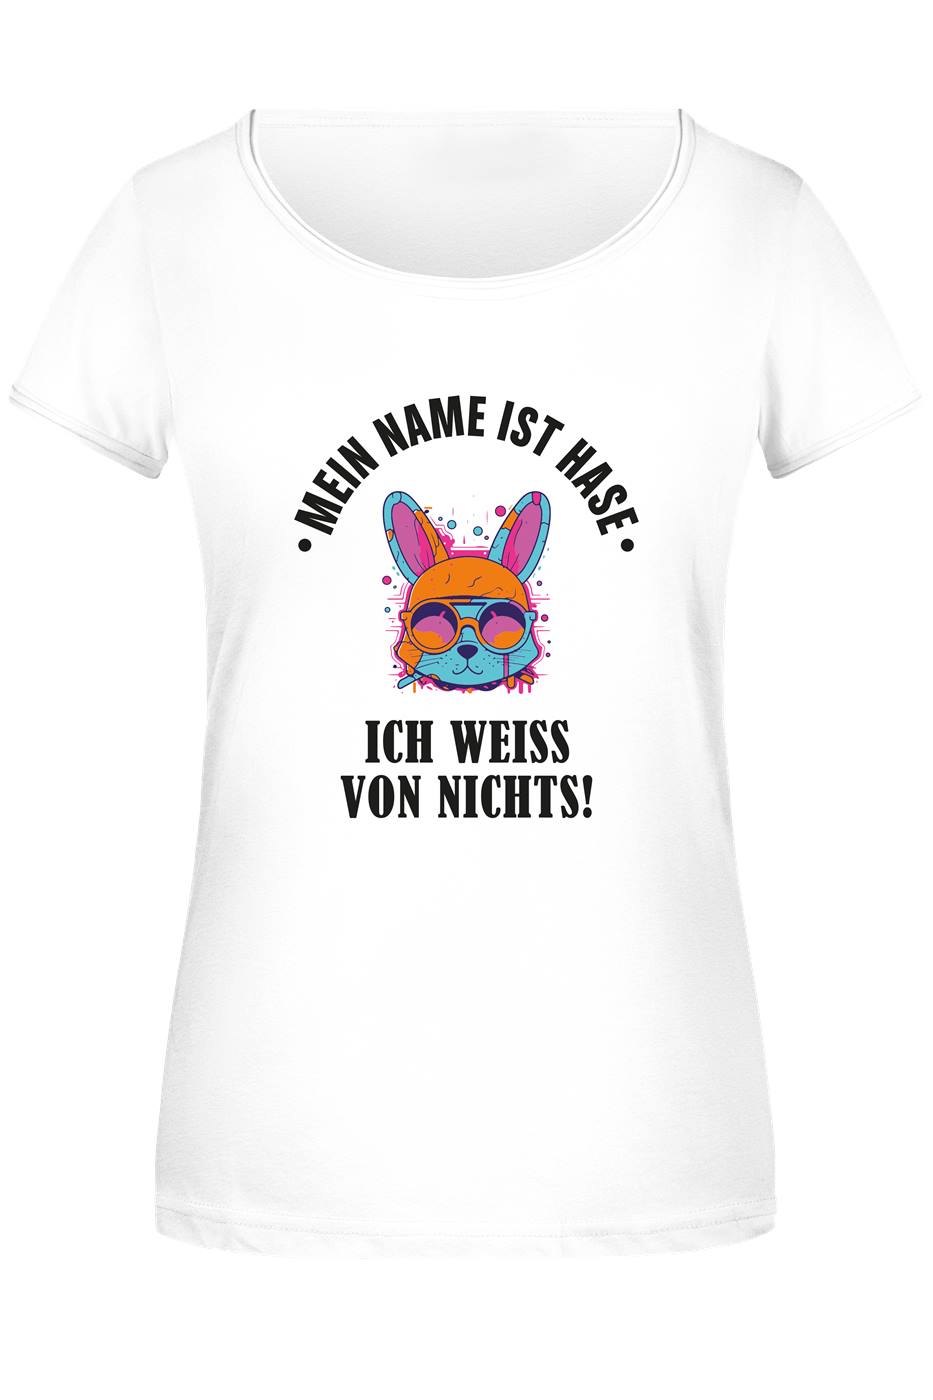 T-Shirt Damen - Mein Name ist Hase, ich weiß von nichts!